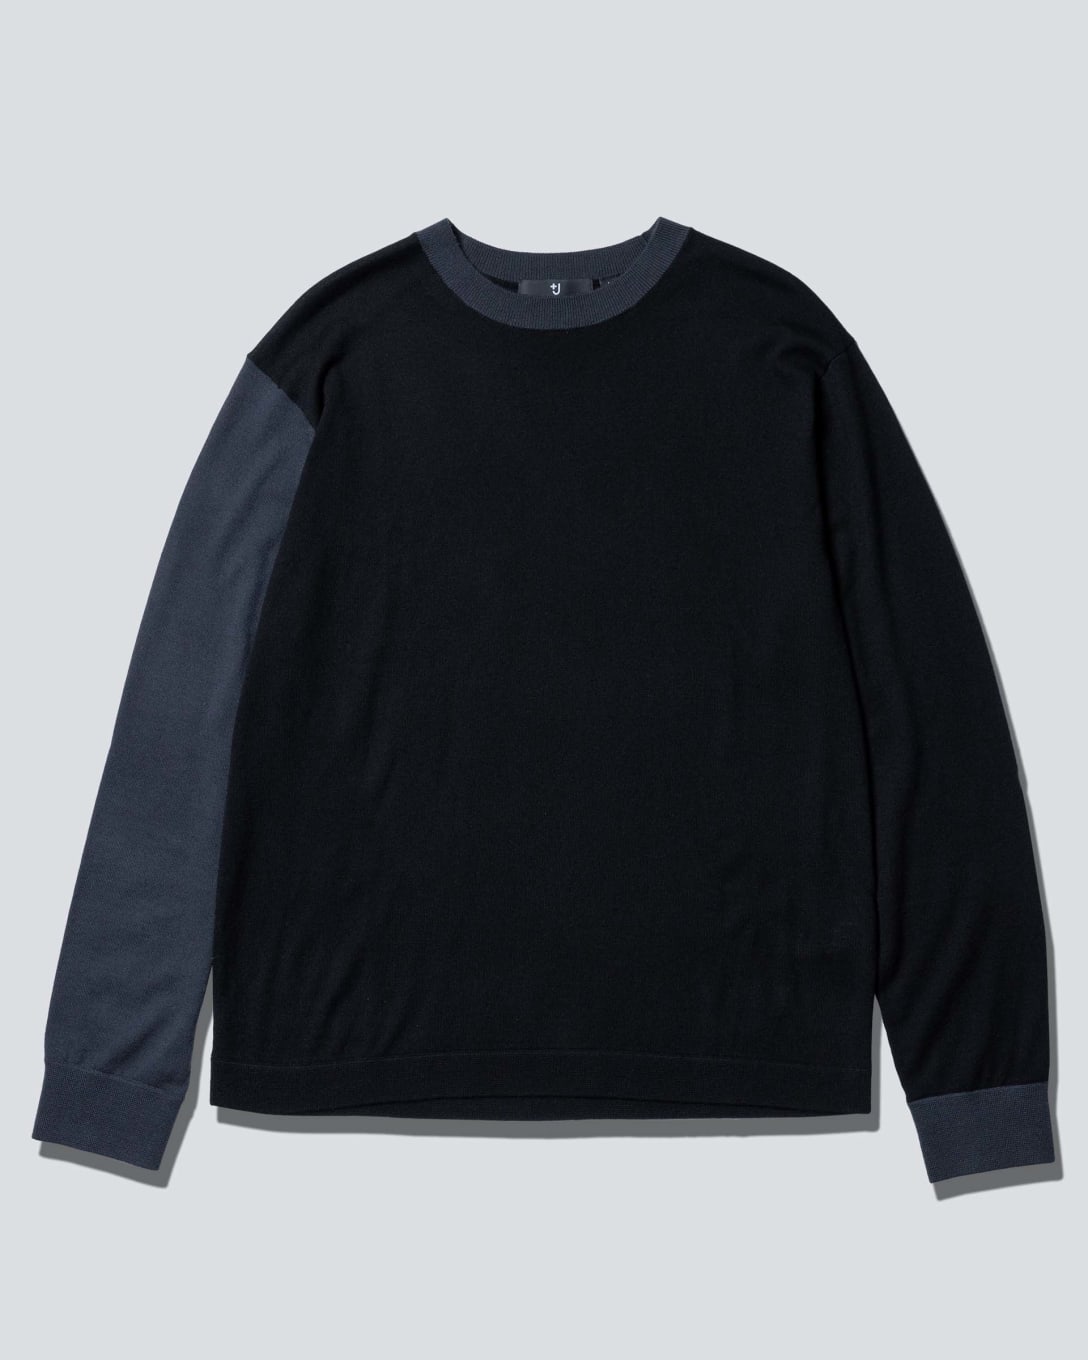 カシミヤクルーネックセーター（長袖）（ブラック、1万5900円） Image by FASHIONSNAP